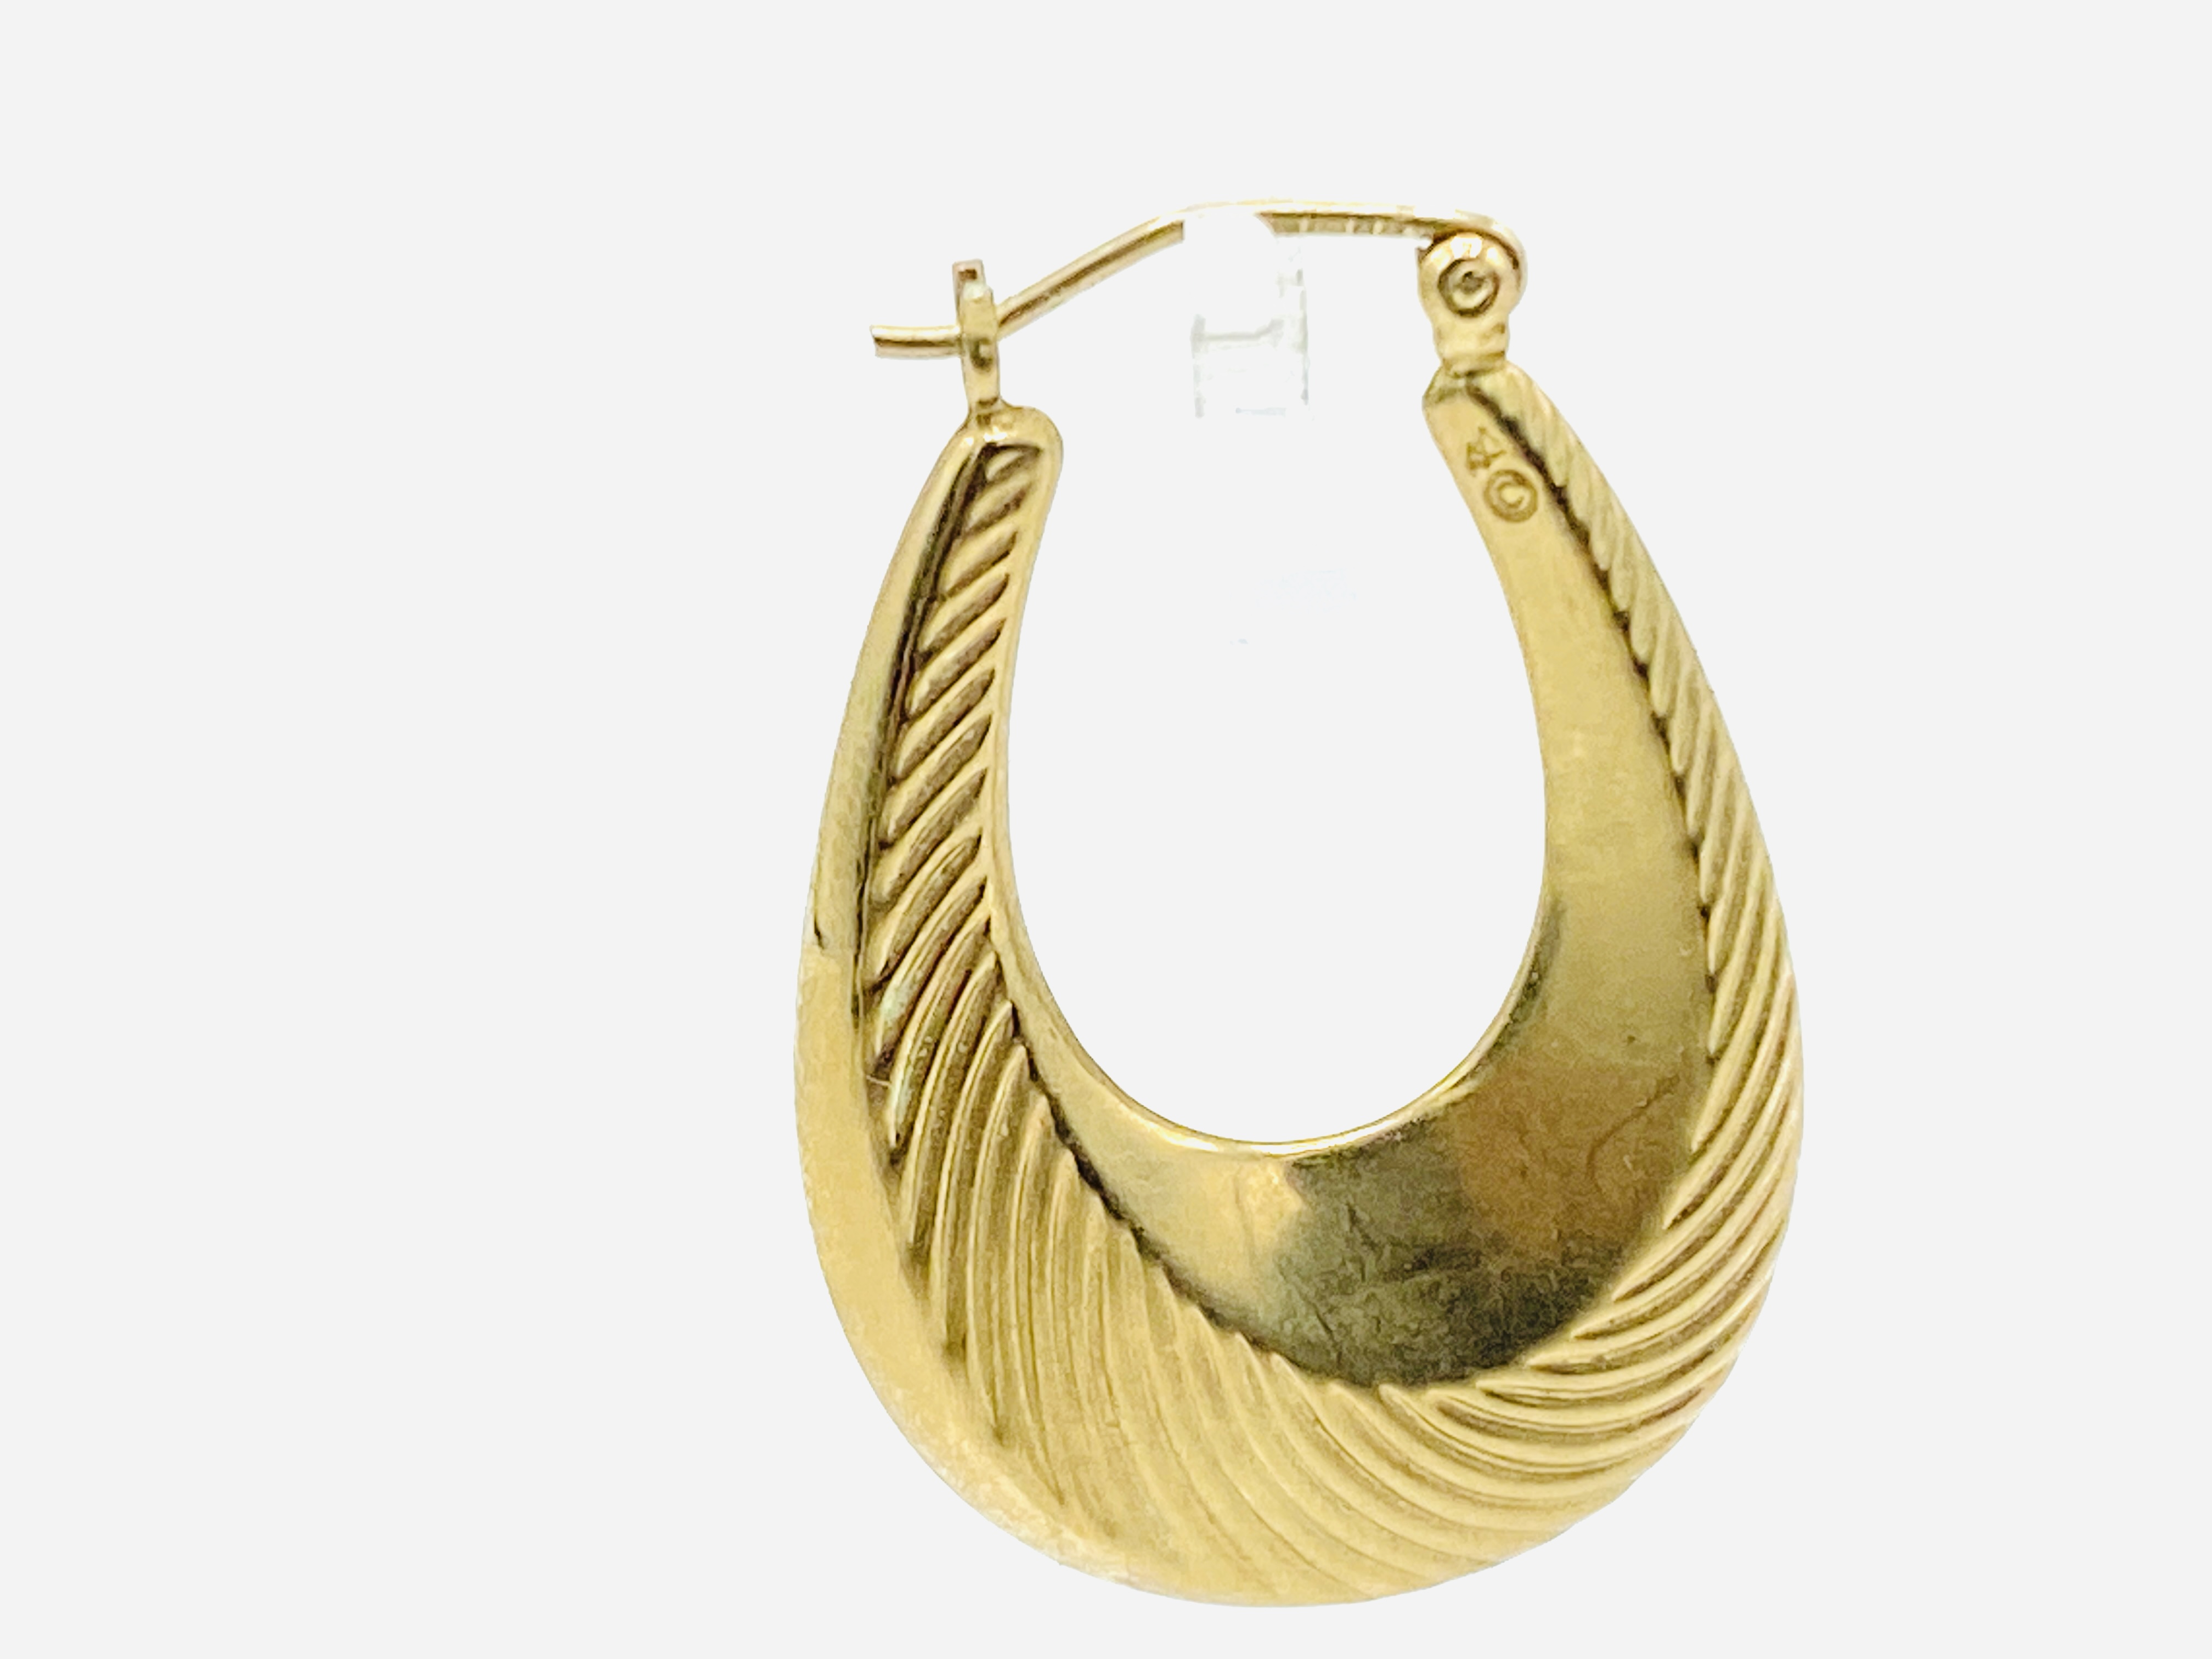 Pair of 9ct gold loop earrings - Image 3 of 3